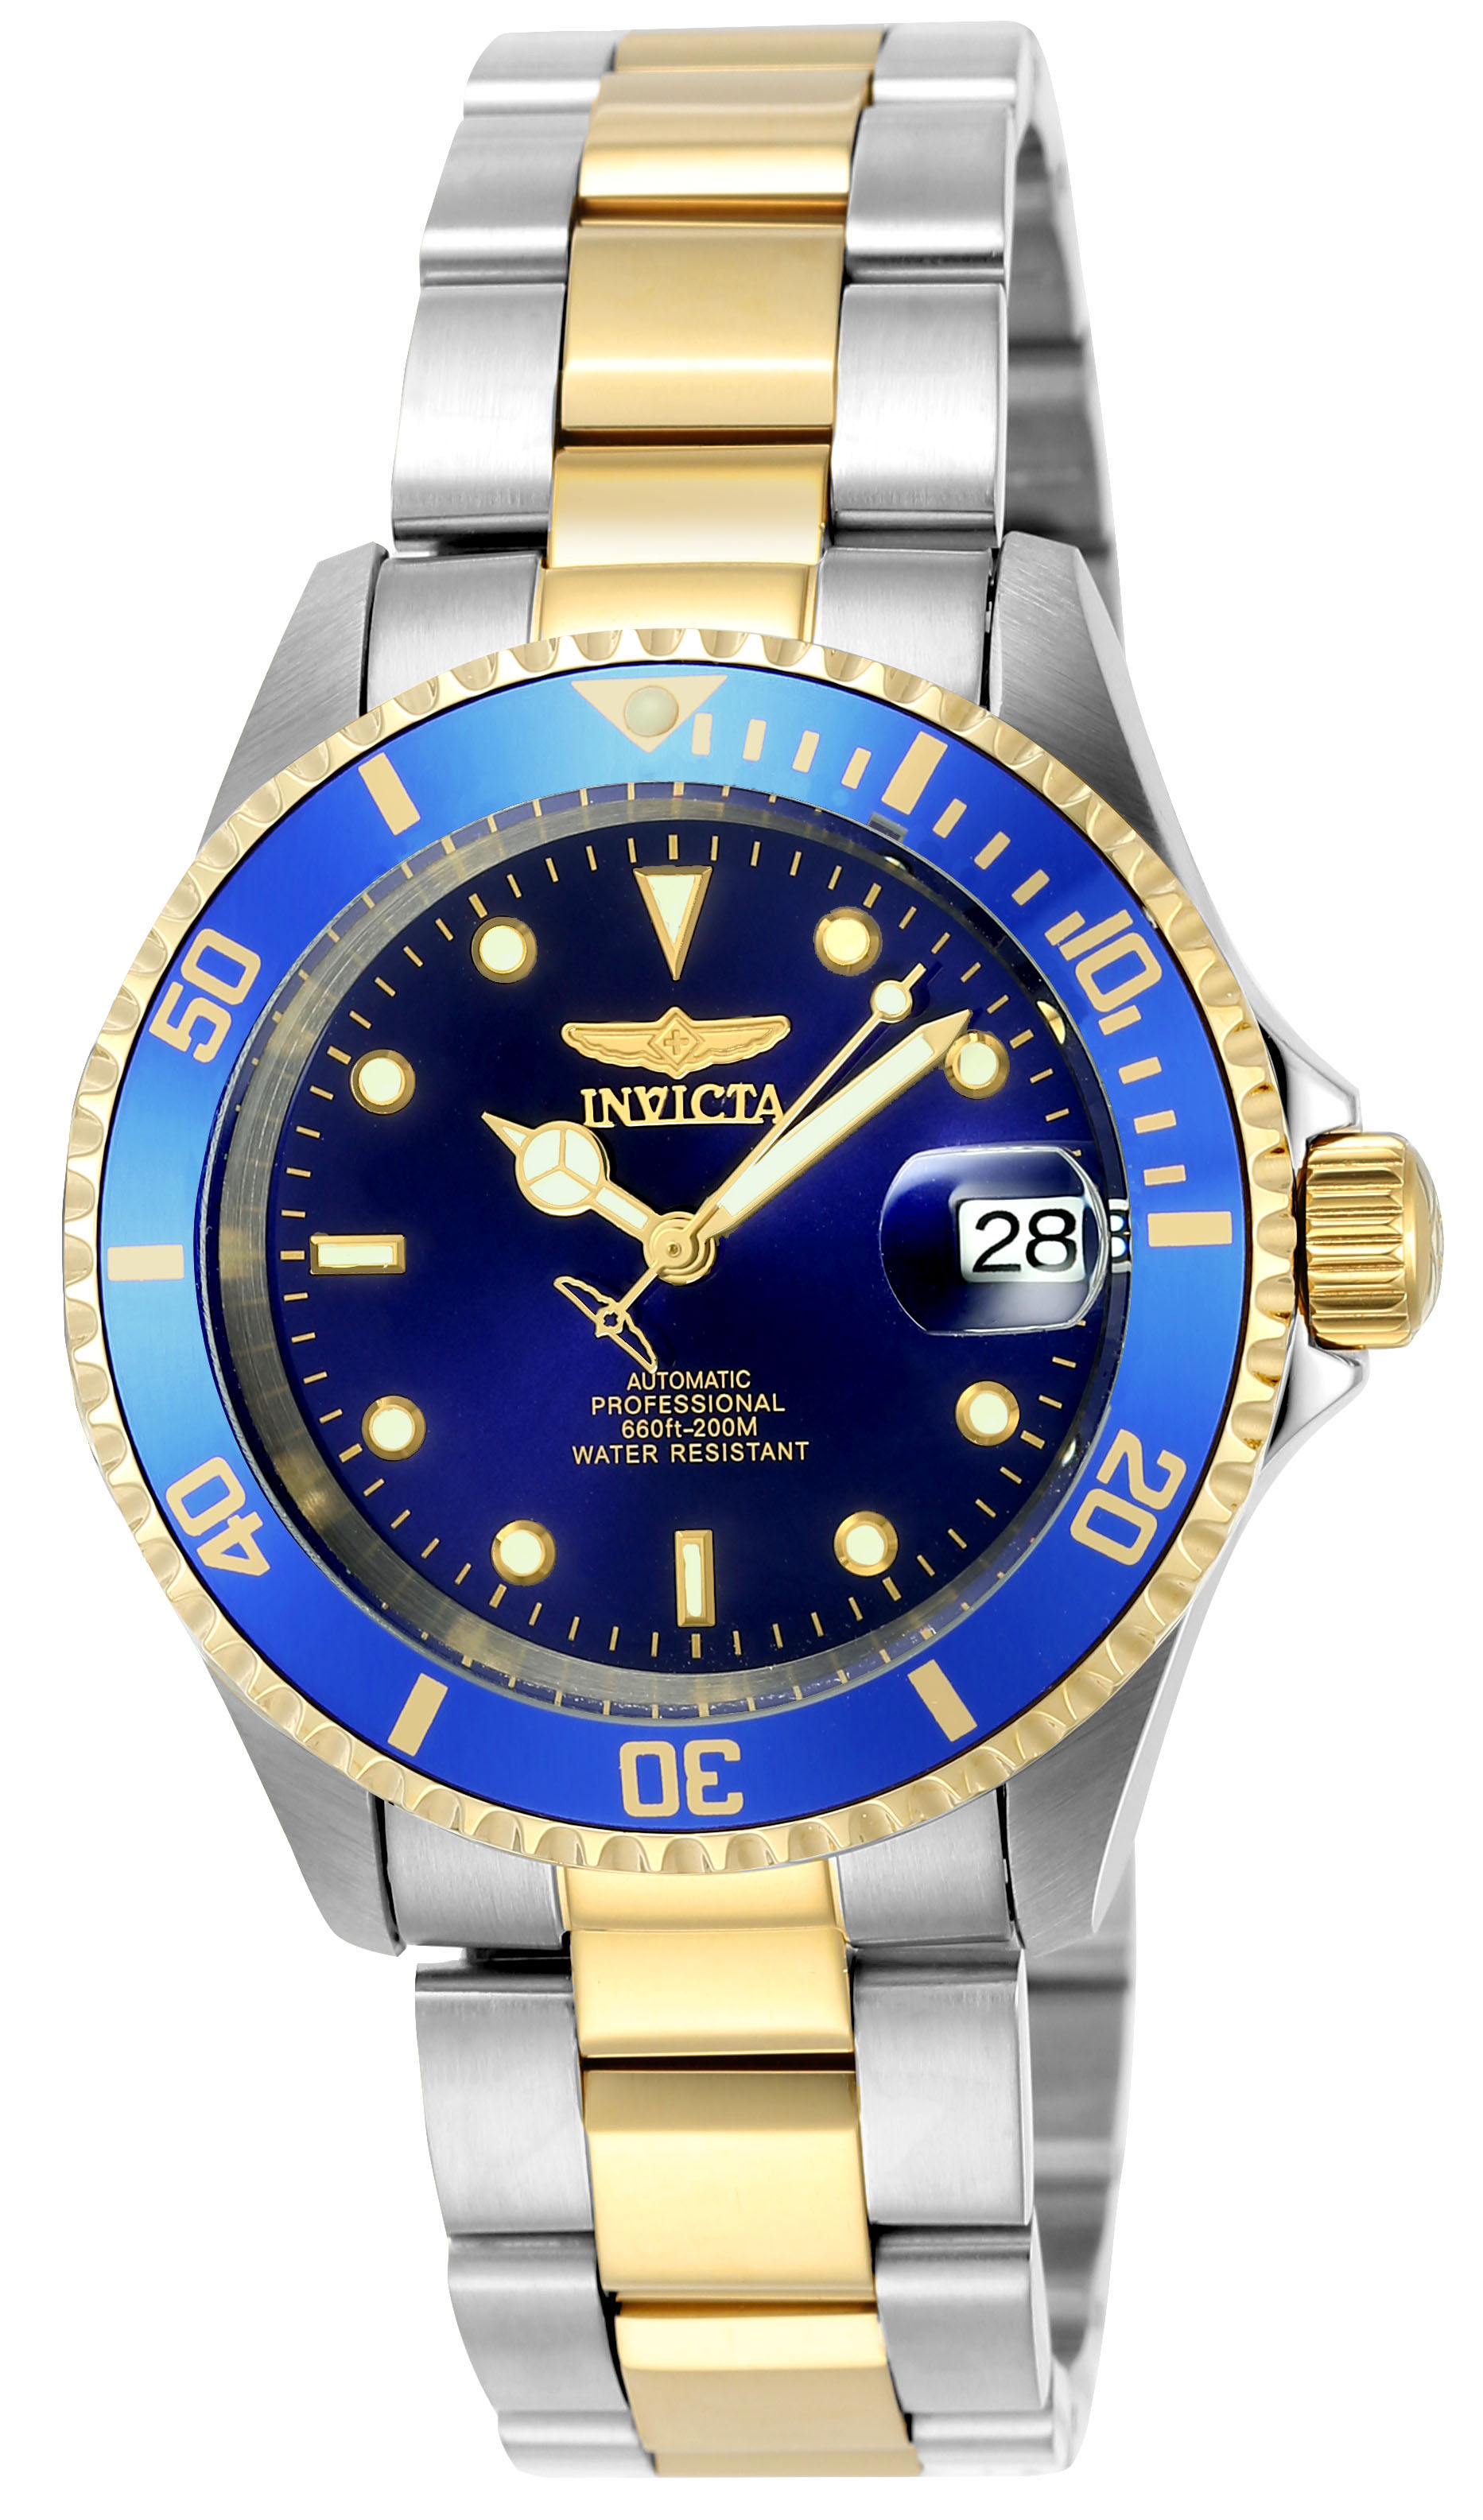 Gevoel van schuld Bukken cabine Invicta Pro Diver Men's Watch (Mod: 8928) | Invicta Watches